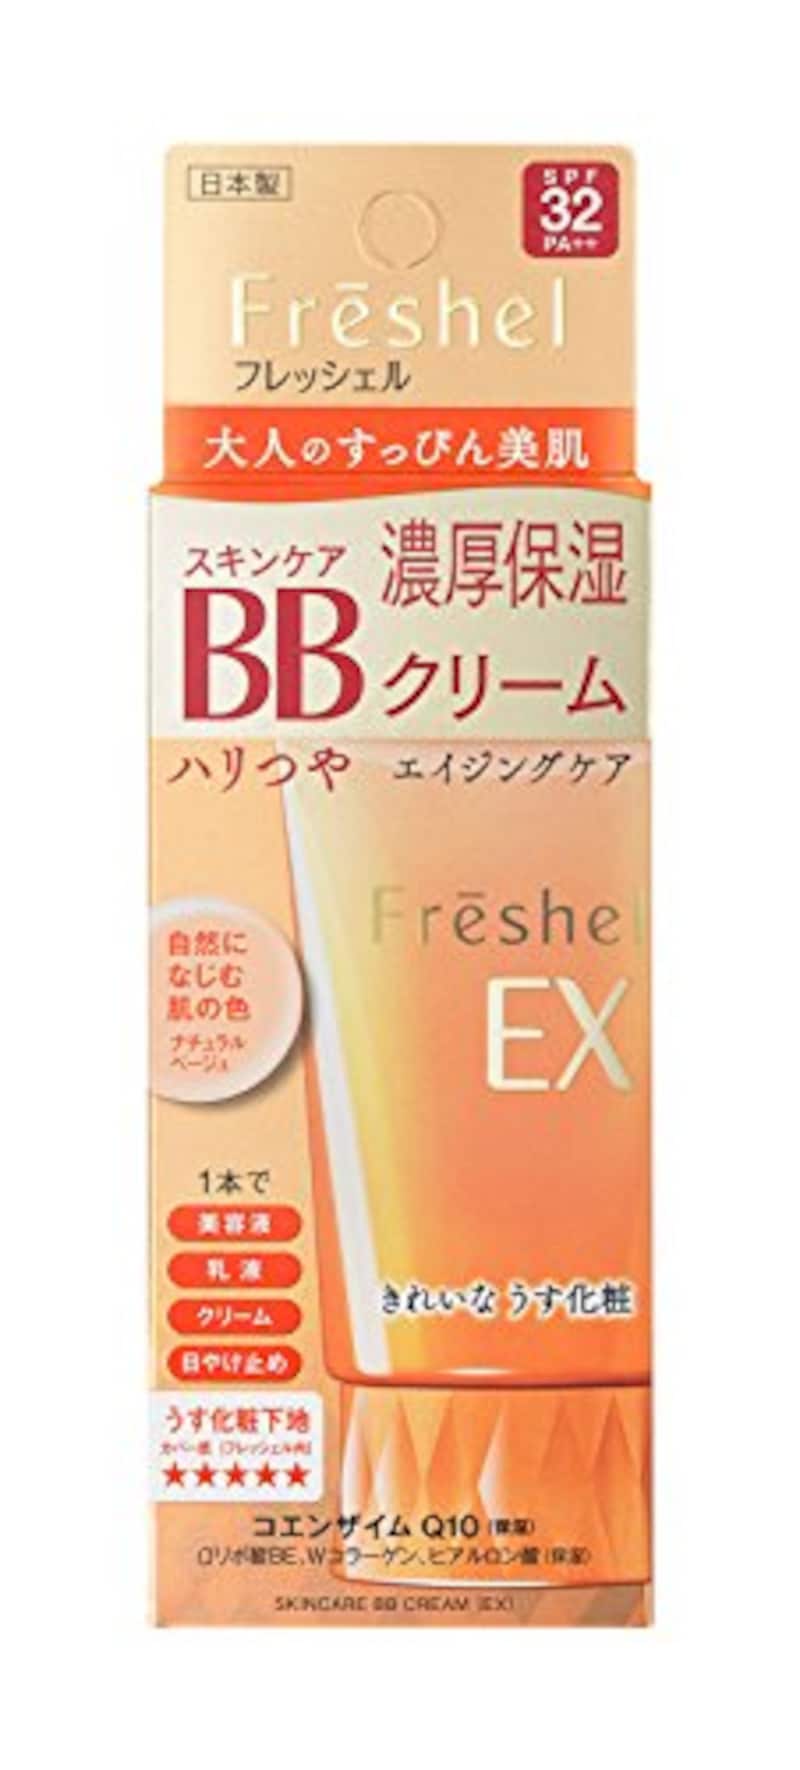 Freshel（フレッシェル）,スキンケアBBクリーム EX 濃厚保湿